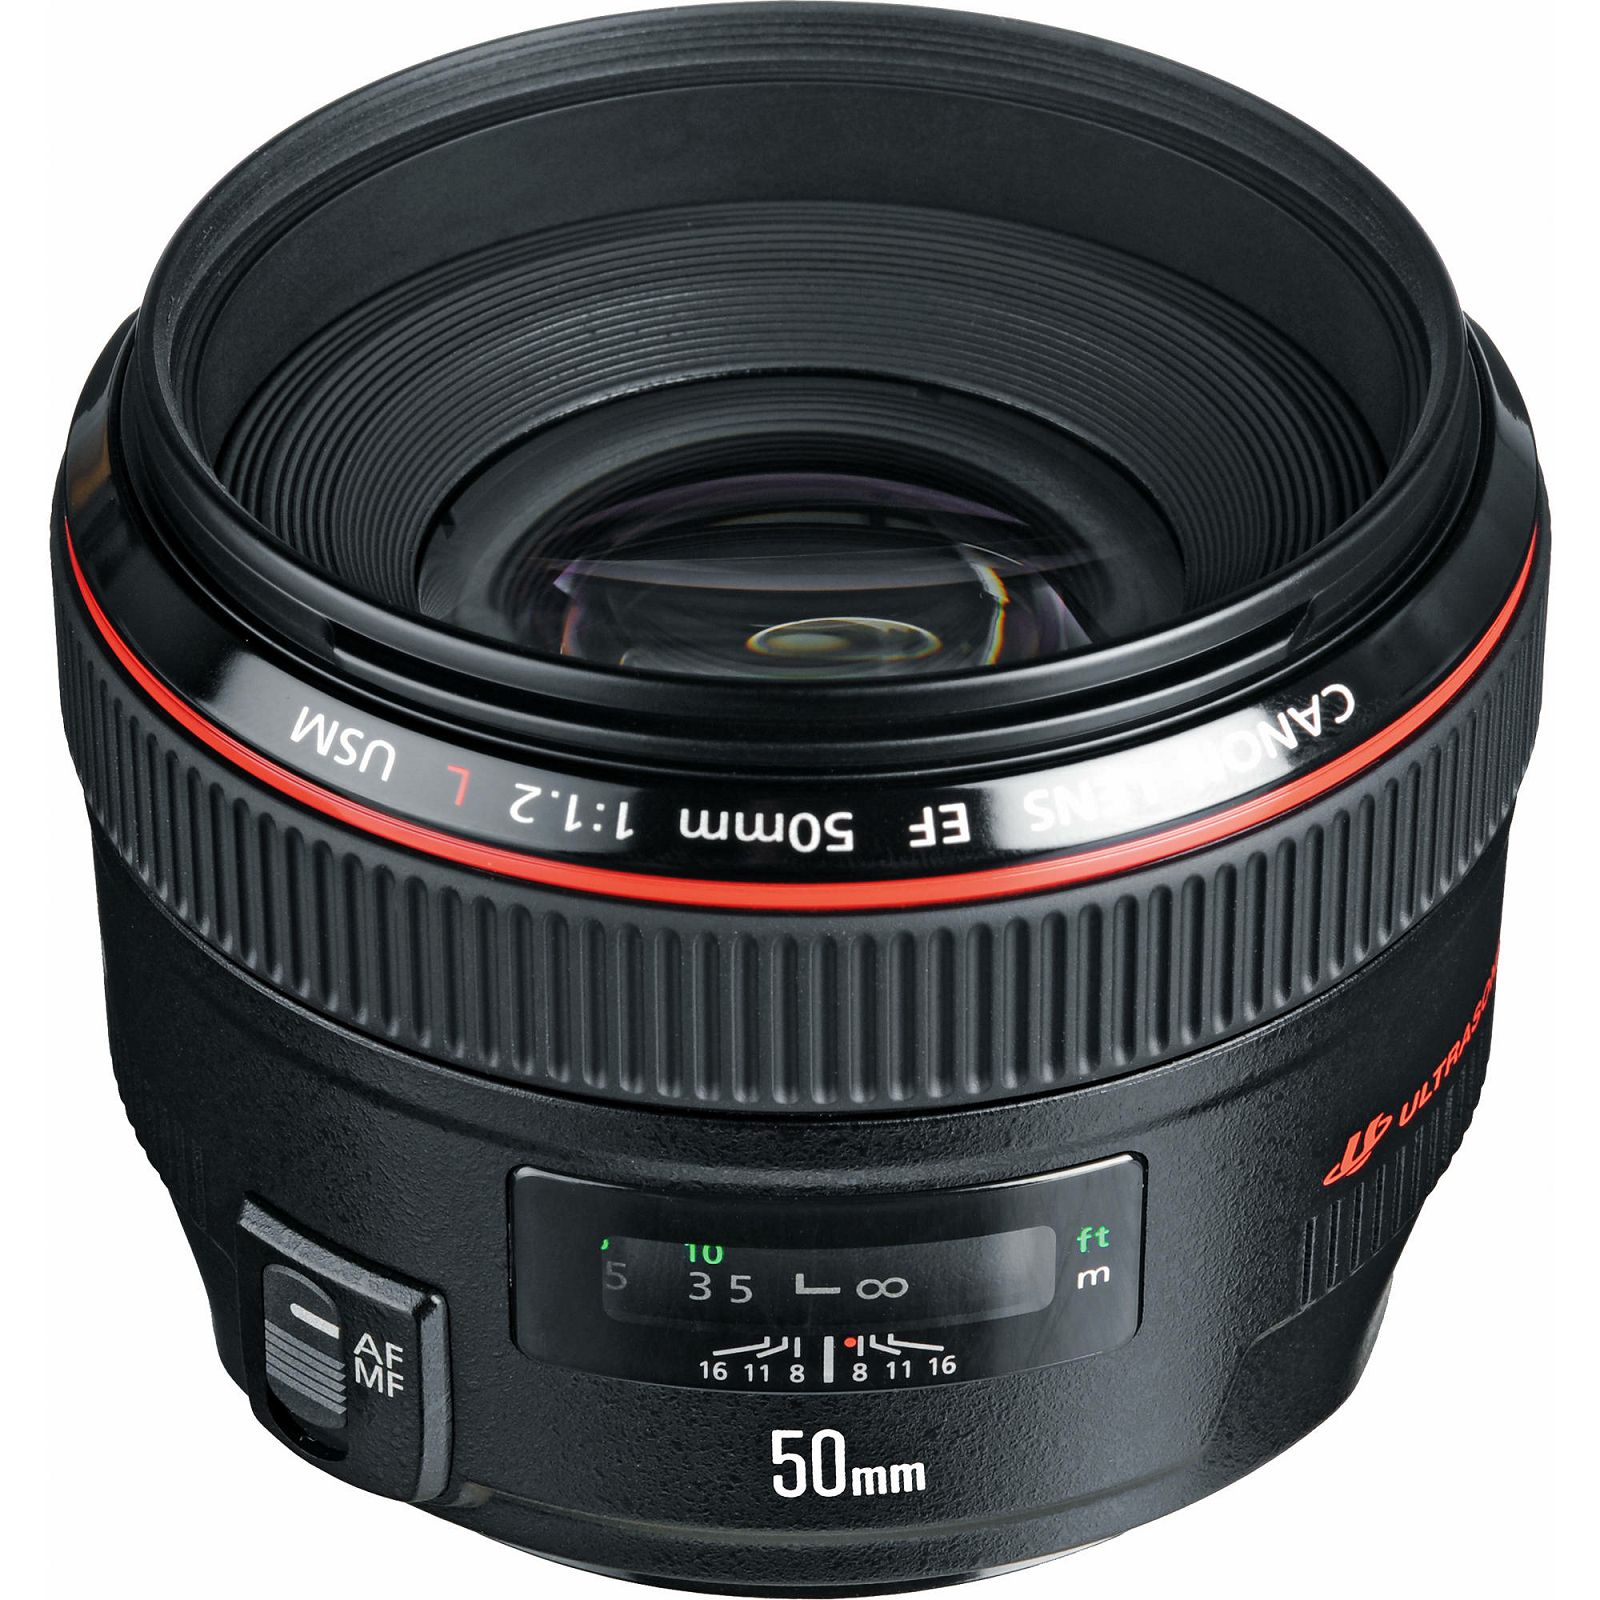 Canon EF 50mm f/1.2 L USM standardni portretni objektiv prime lens 50 1:1,2 L F1.2 F/1.2 (1257B005AA)